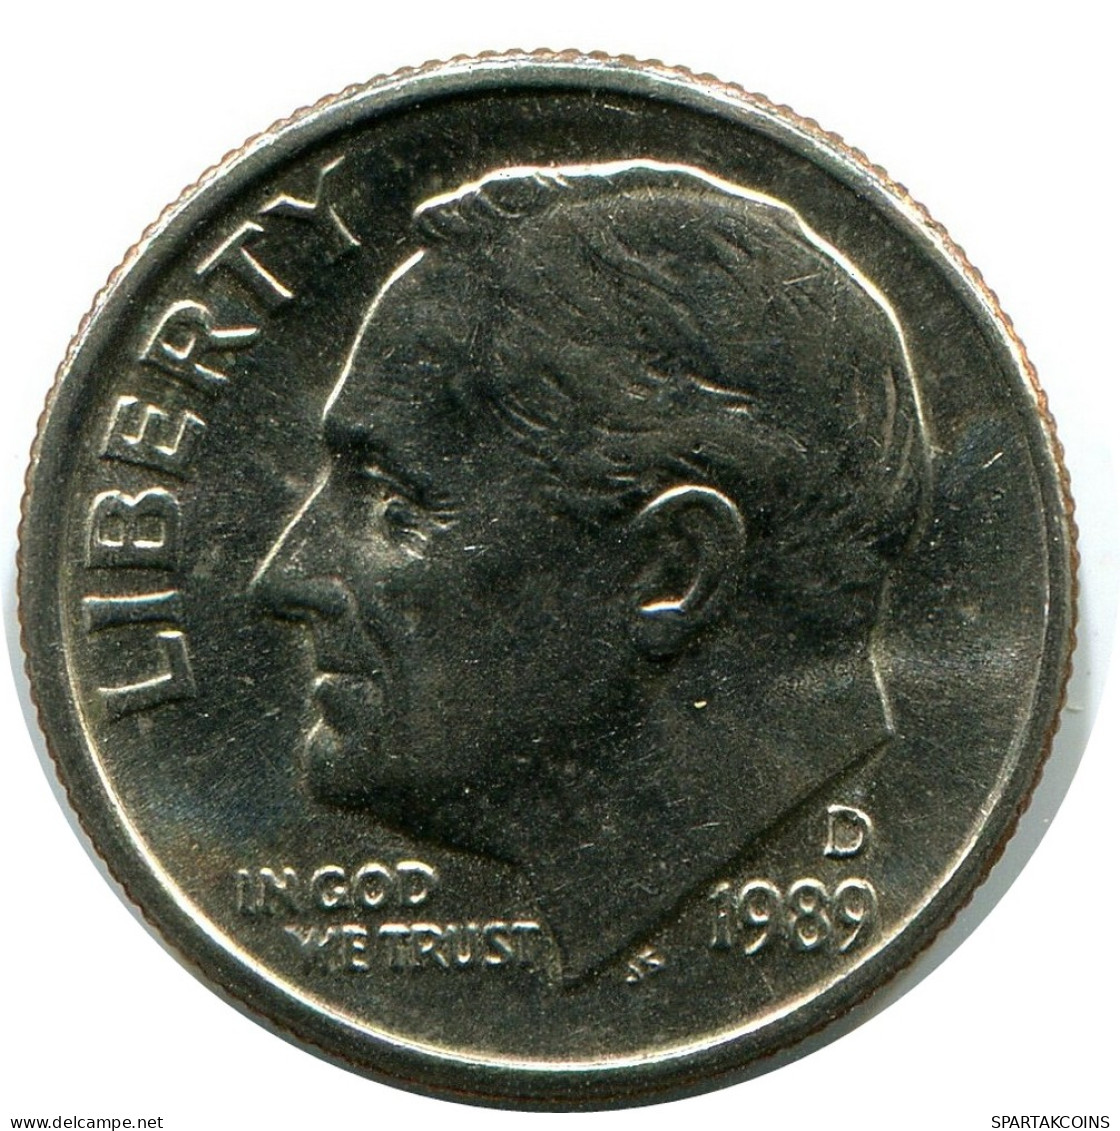 10 CENTS 1989 USA Coin #AZ249.U - 2, 3 & 20 Cents